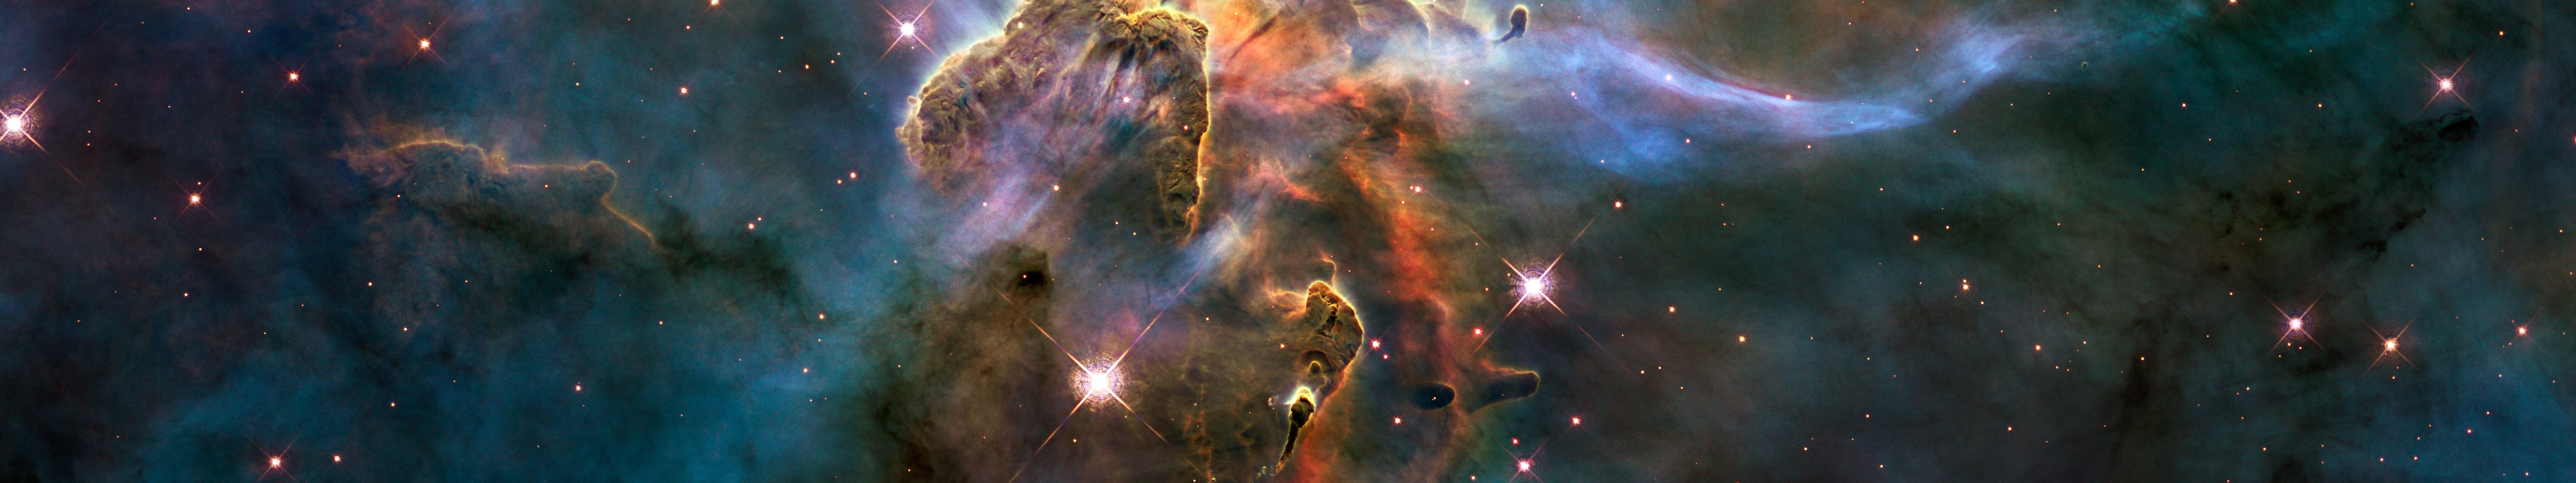 Sci Fi Nebula là những bức tranh đầy màu sắc và giữa đó là những đám mây sáng rực rỡ và nhiều hình dạng khác nhau. Bạn sẽ cảm nhận được sự thông thái từ những vì sao lấp lánh.